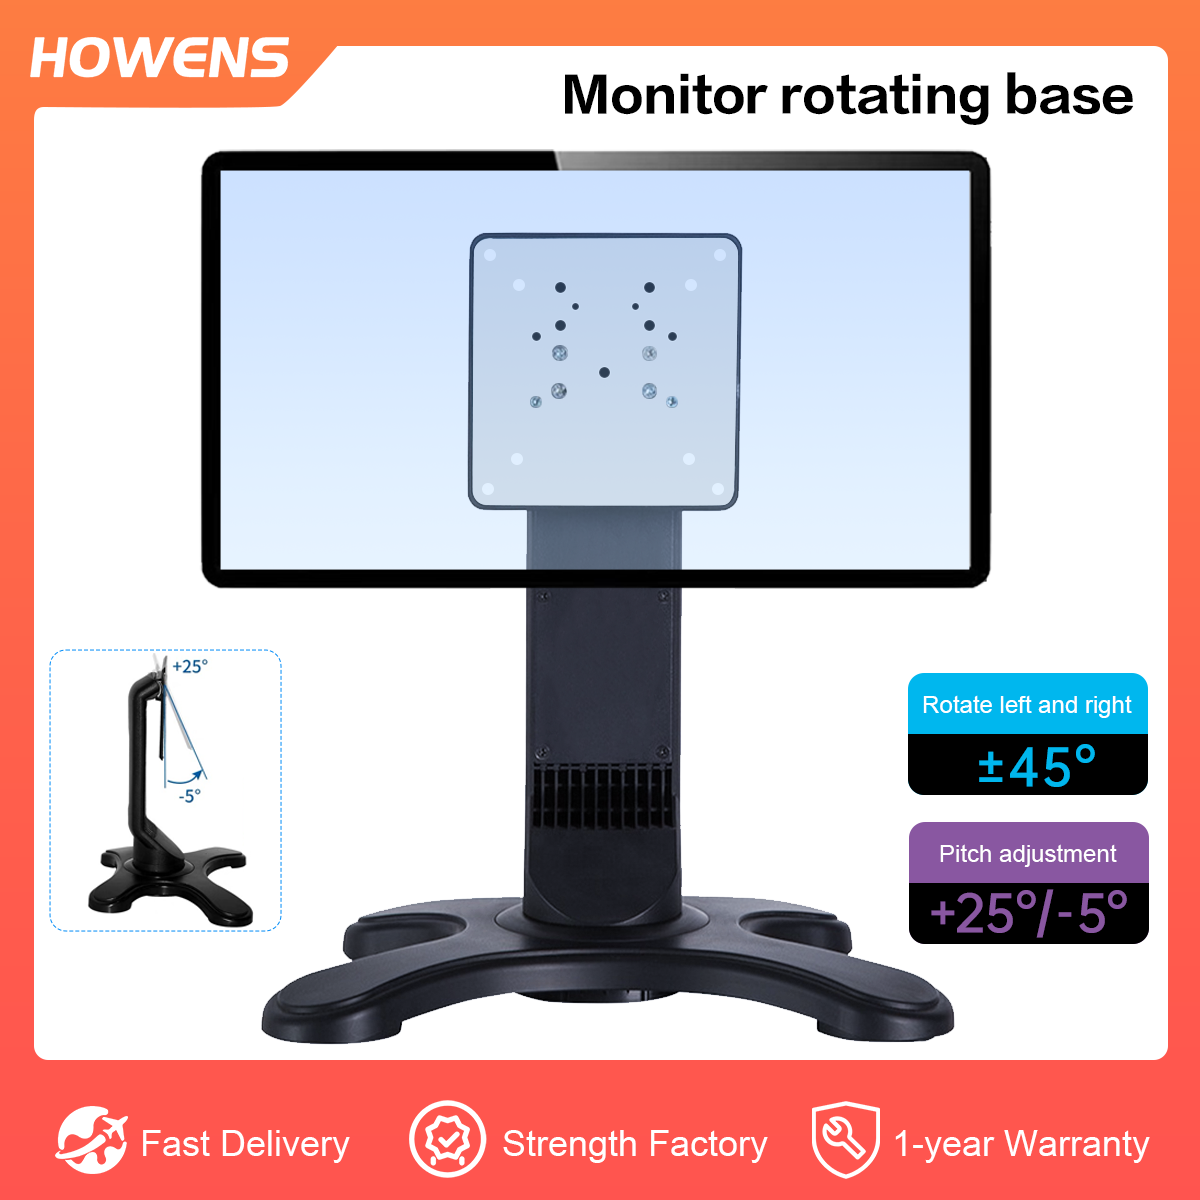 Monitor Rotating Base